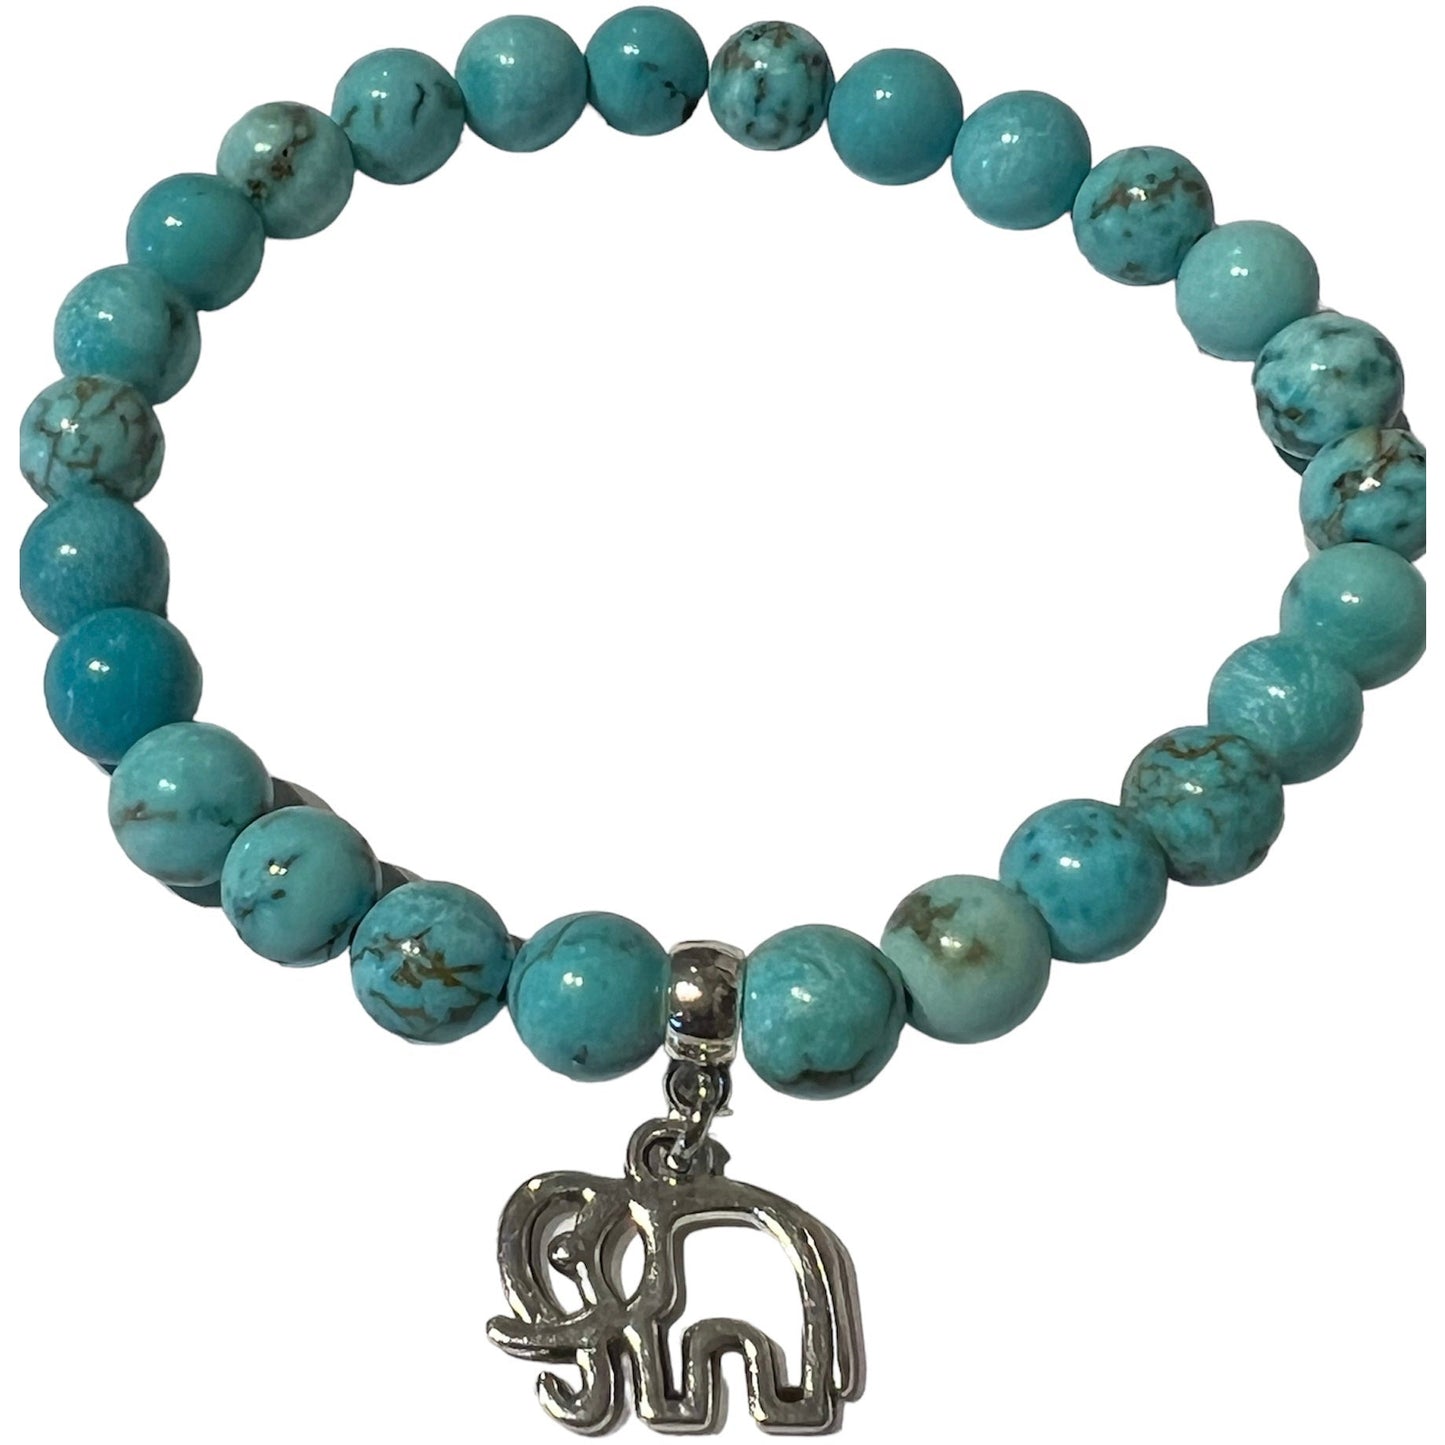 Elephant bracelet